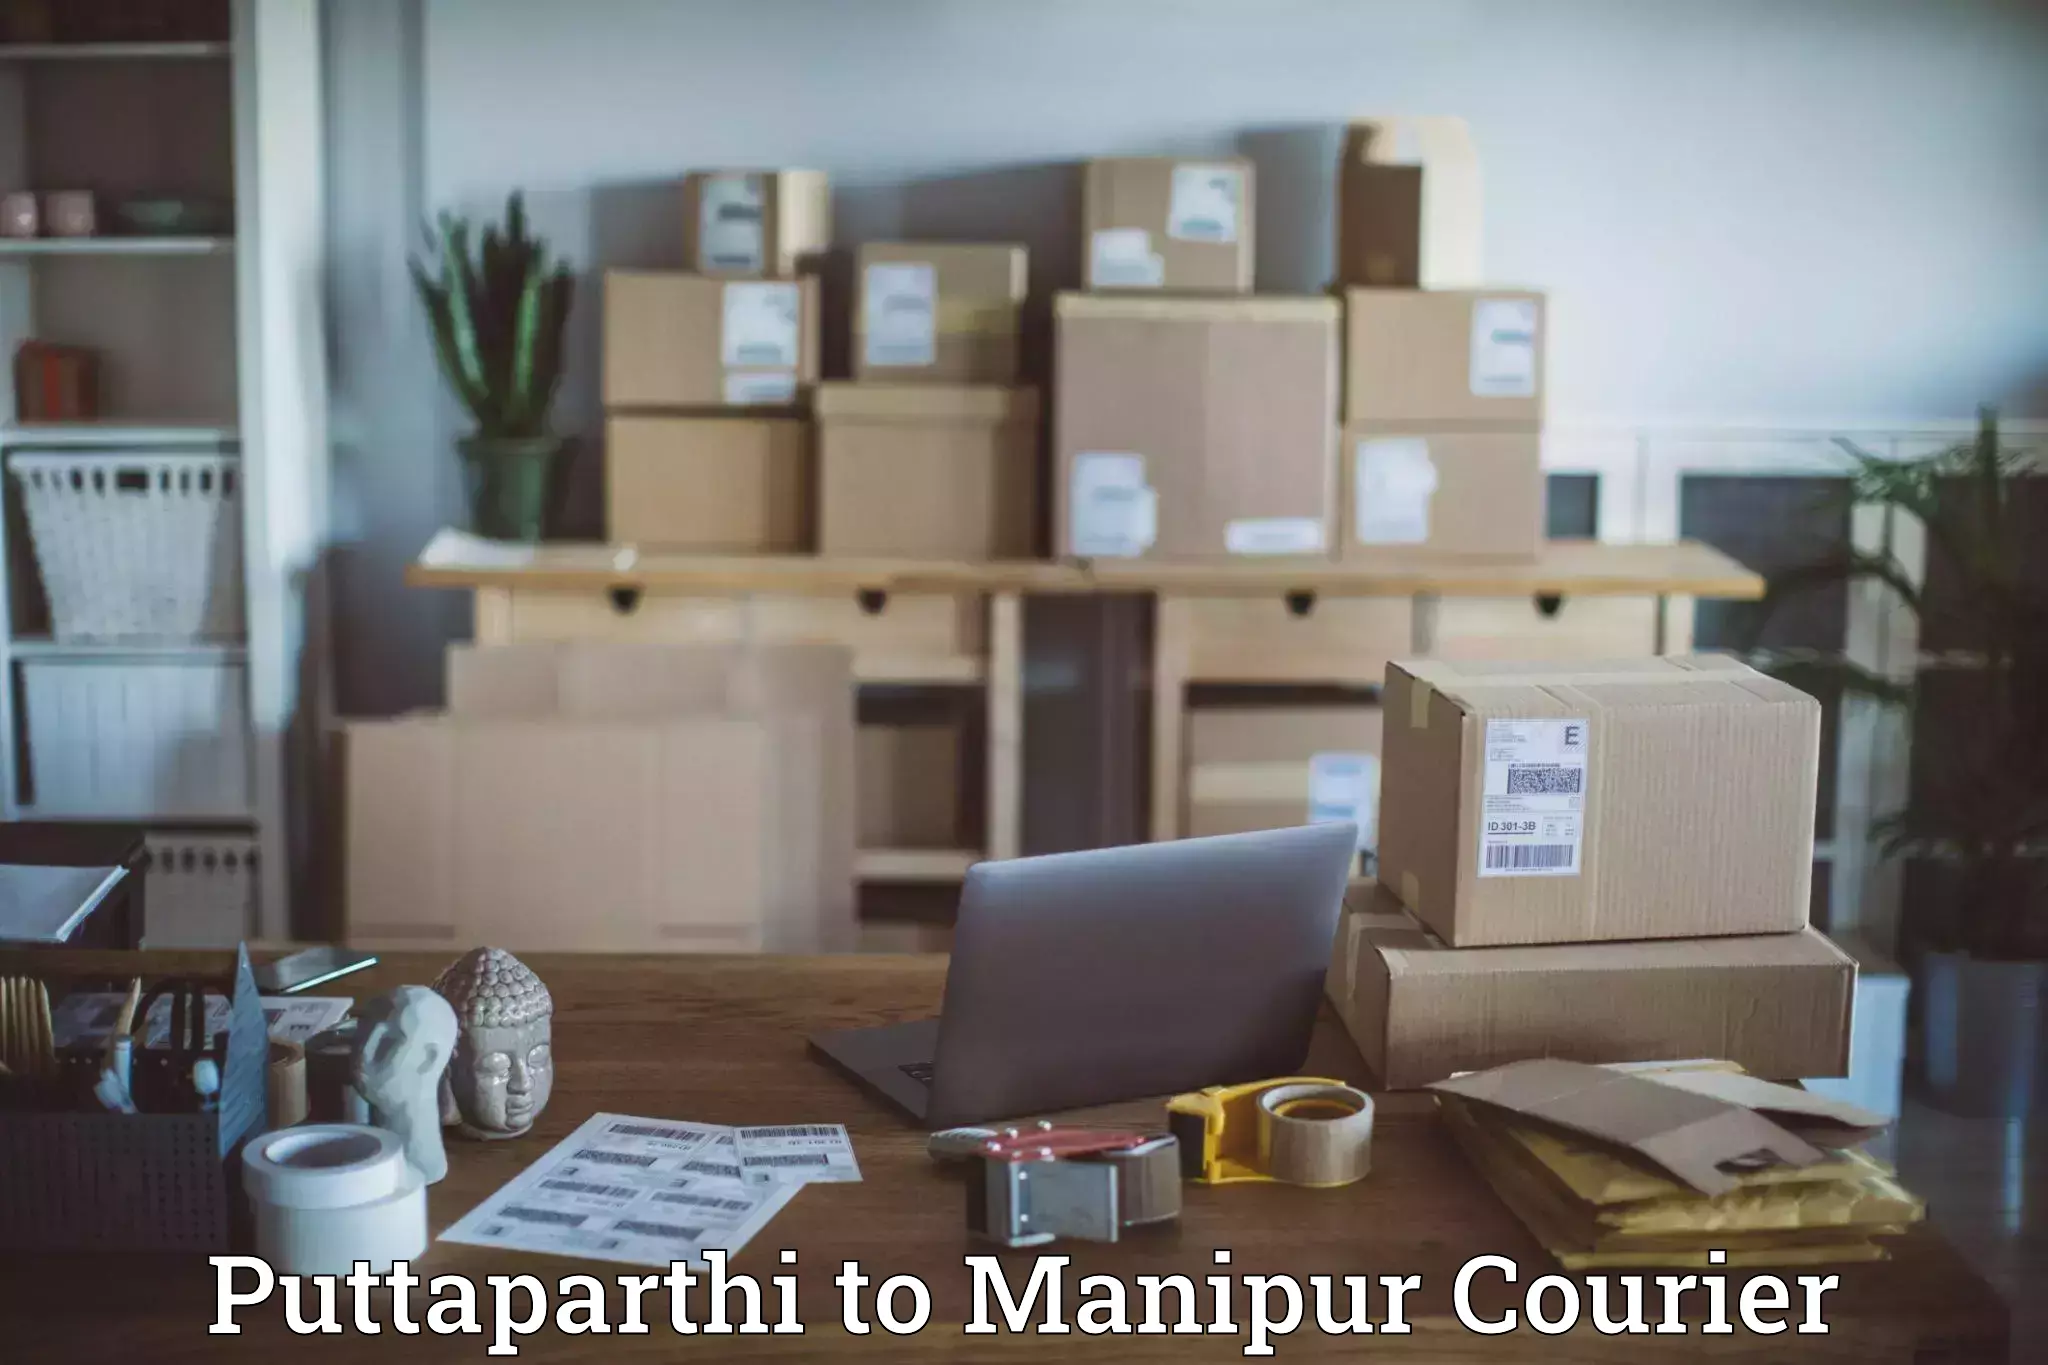 High-speed parcel service Puttaparthi to Manipur